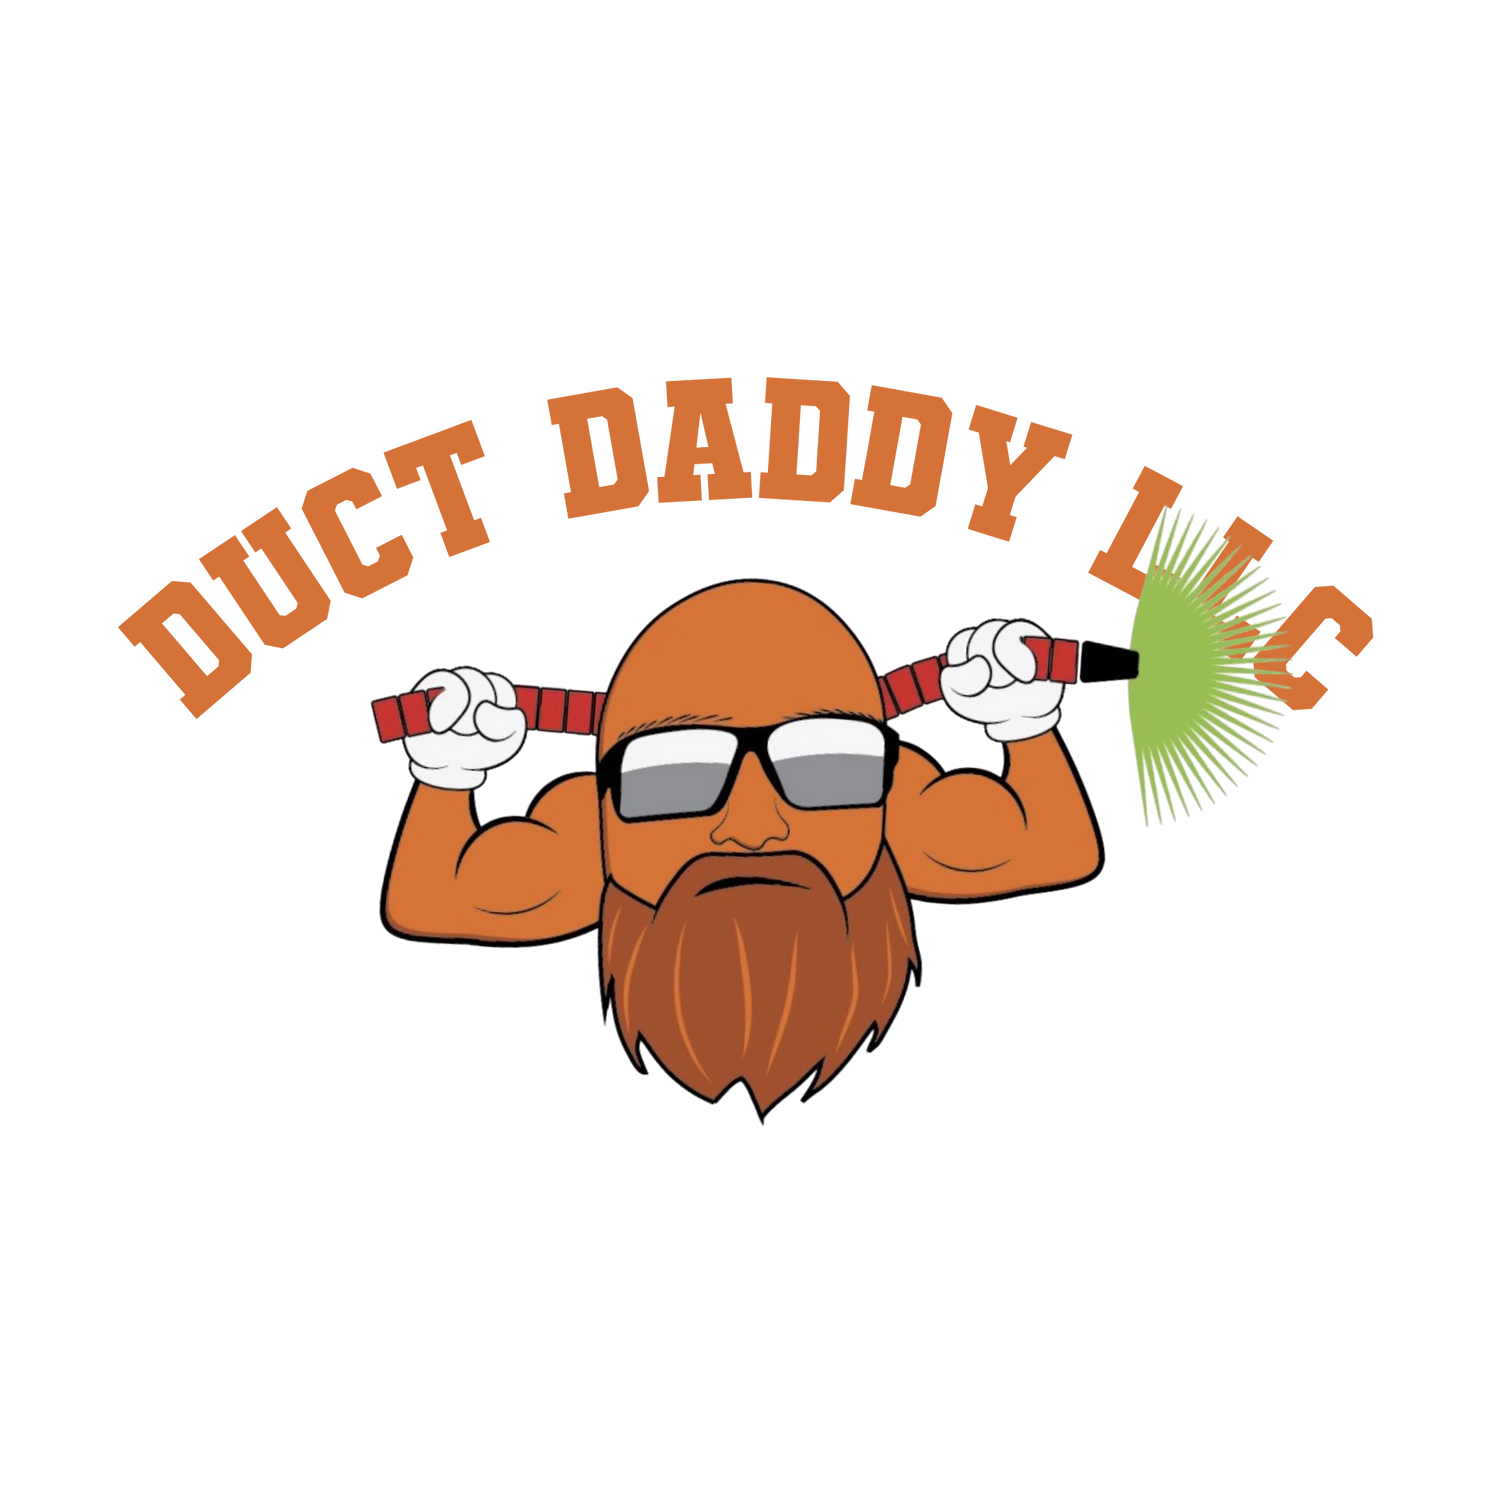 Duct Daddy LLC